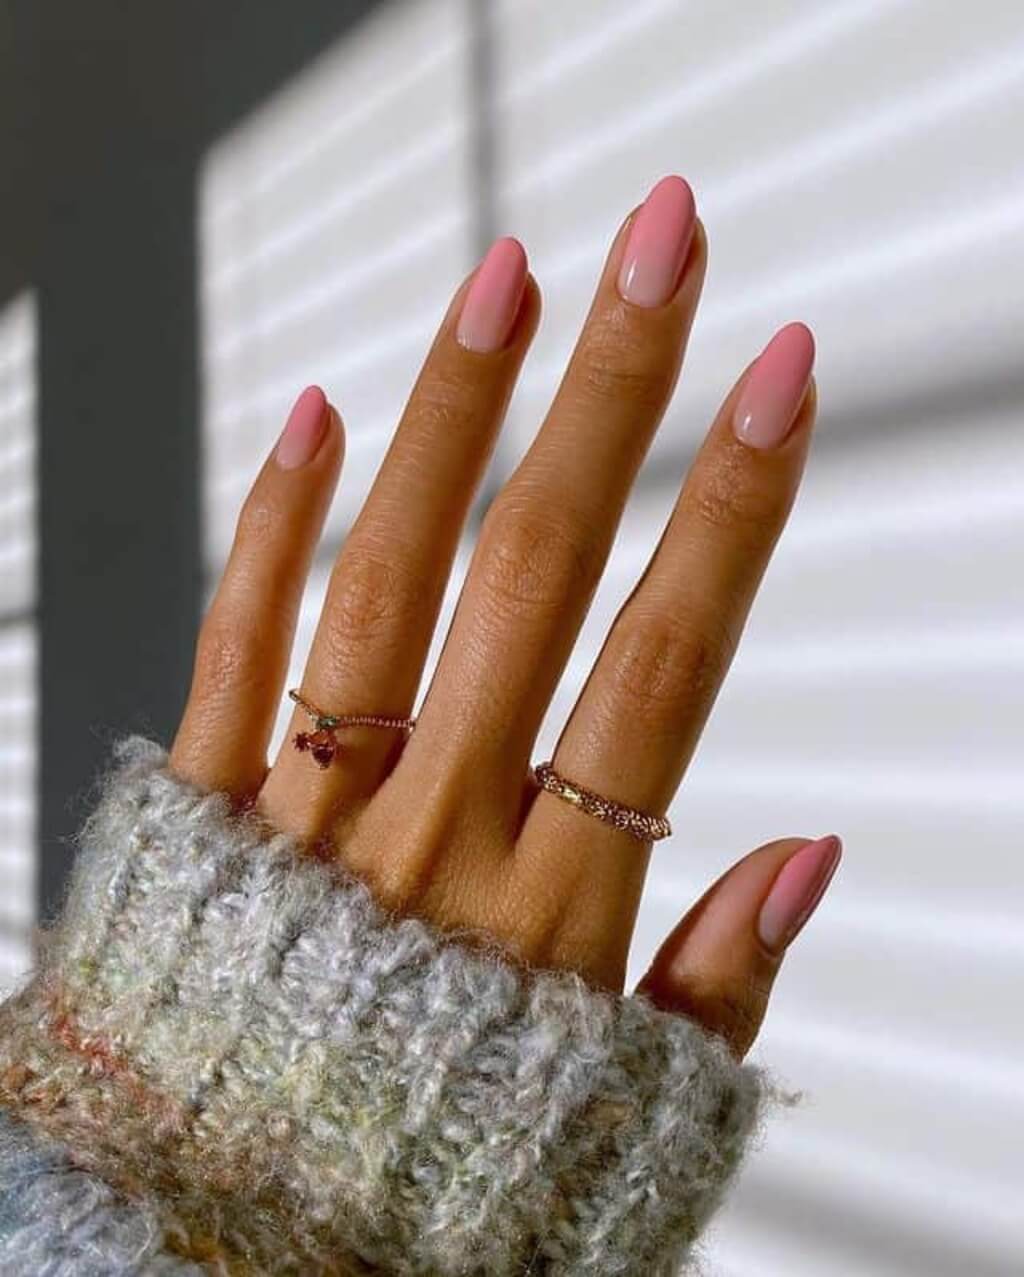 light pink nails design